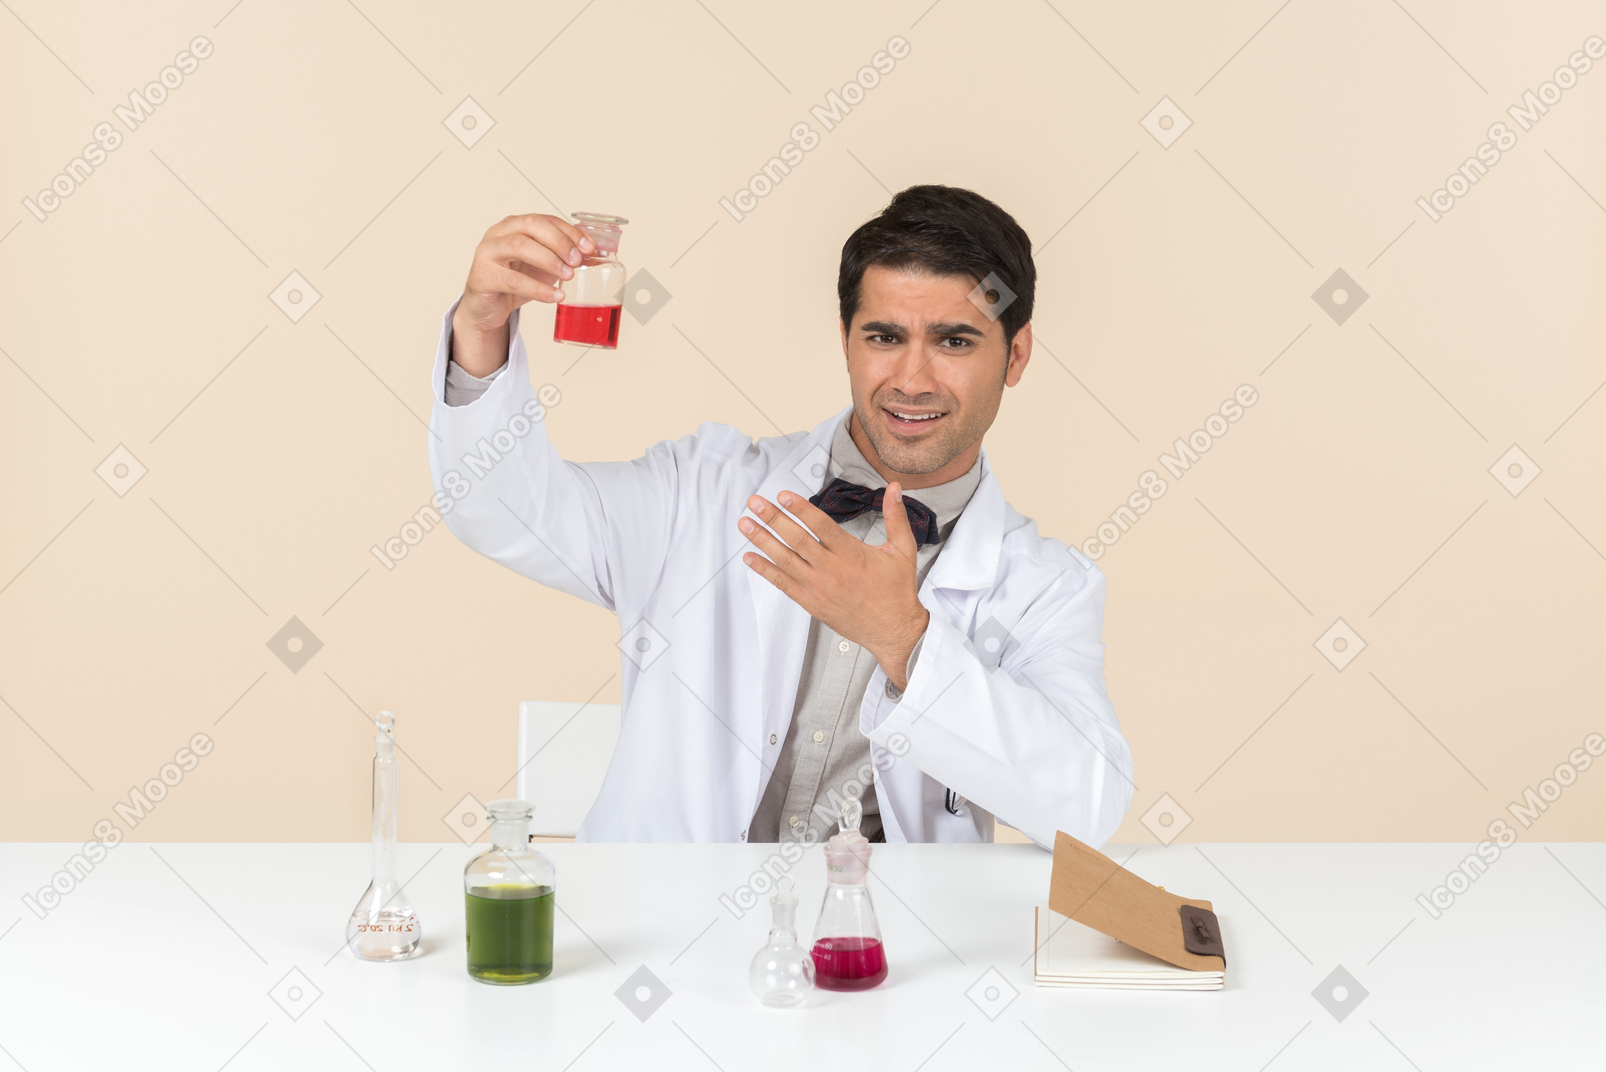 Обеспокоенный ученый мужского пола, сидящий за столом и смотрящий на лампочку